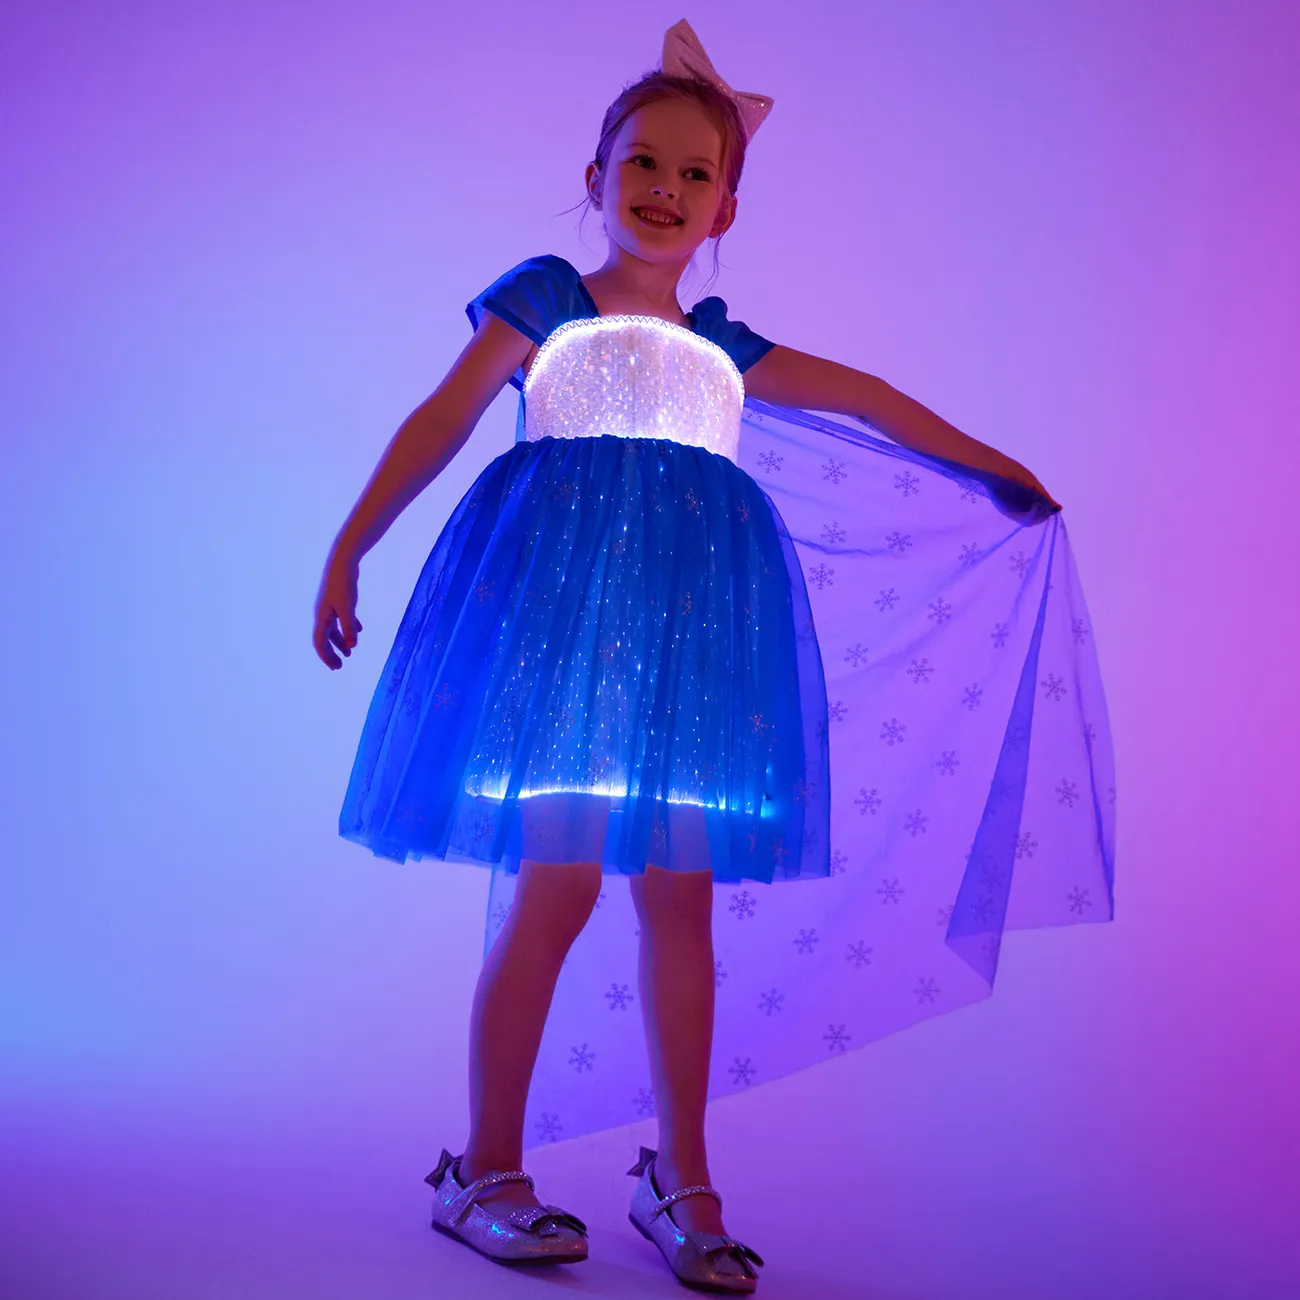 Go-Glow Light Up vestido de fiesta azul con brillo de copo de nieve de lentejuelas y capa extraíble incluyendo controlador (batería incorporada) Azul Oscuro / Blanco big image 1